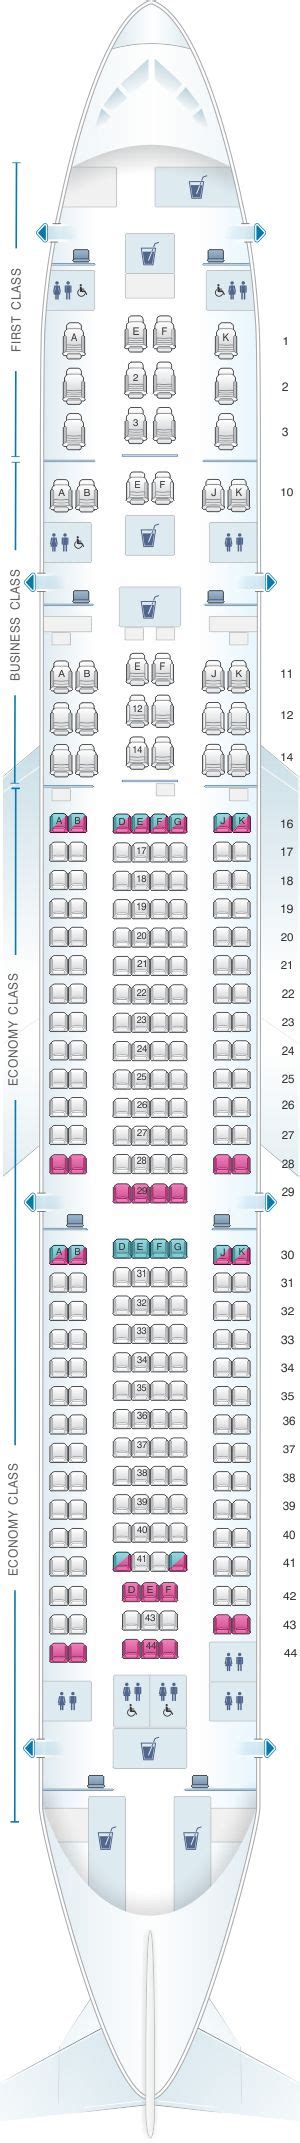 Seat Map Qatar Airways Airbus A330 300 259pax Hainan Airlines